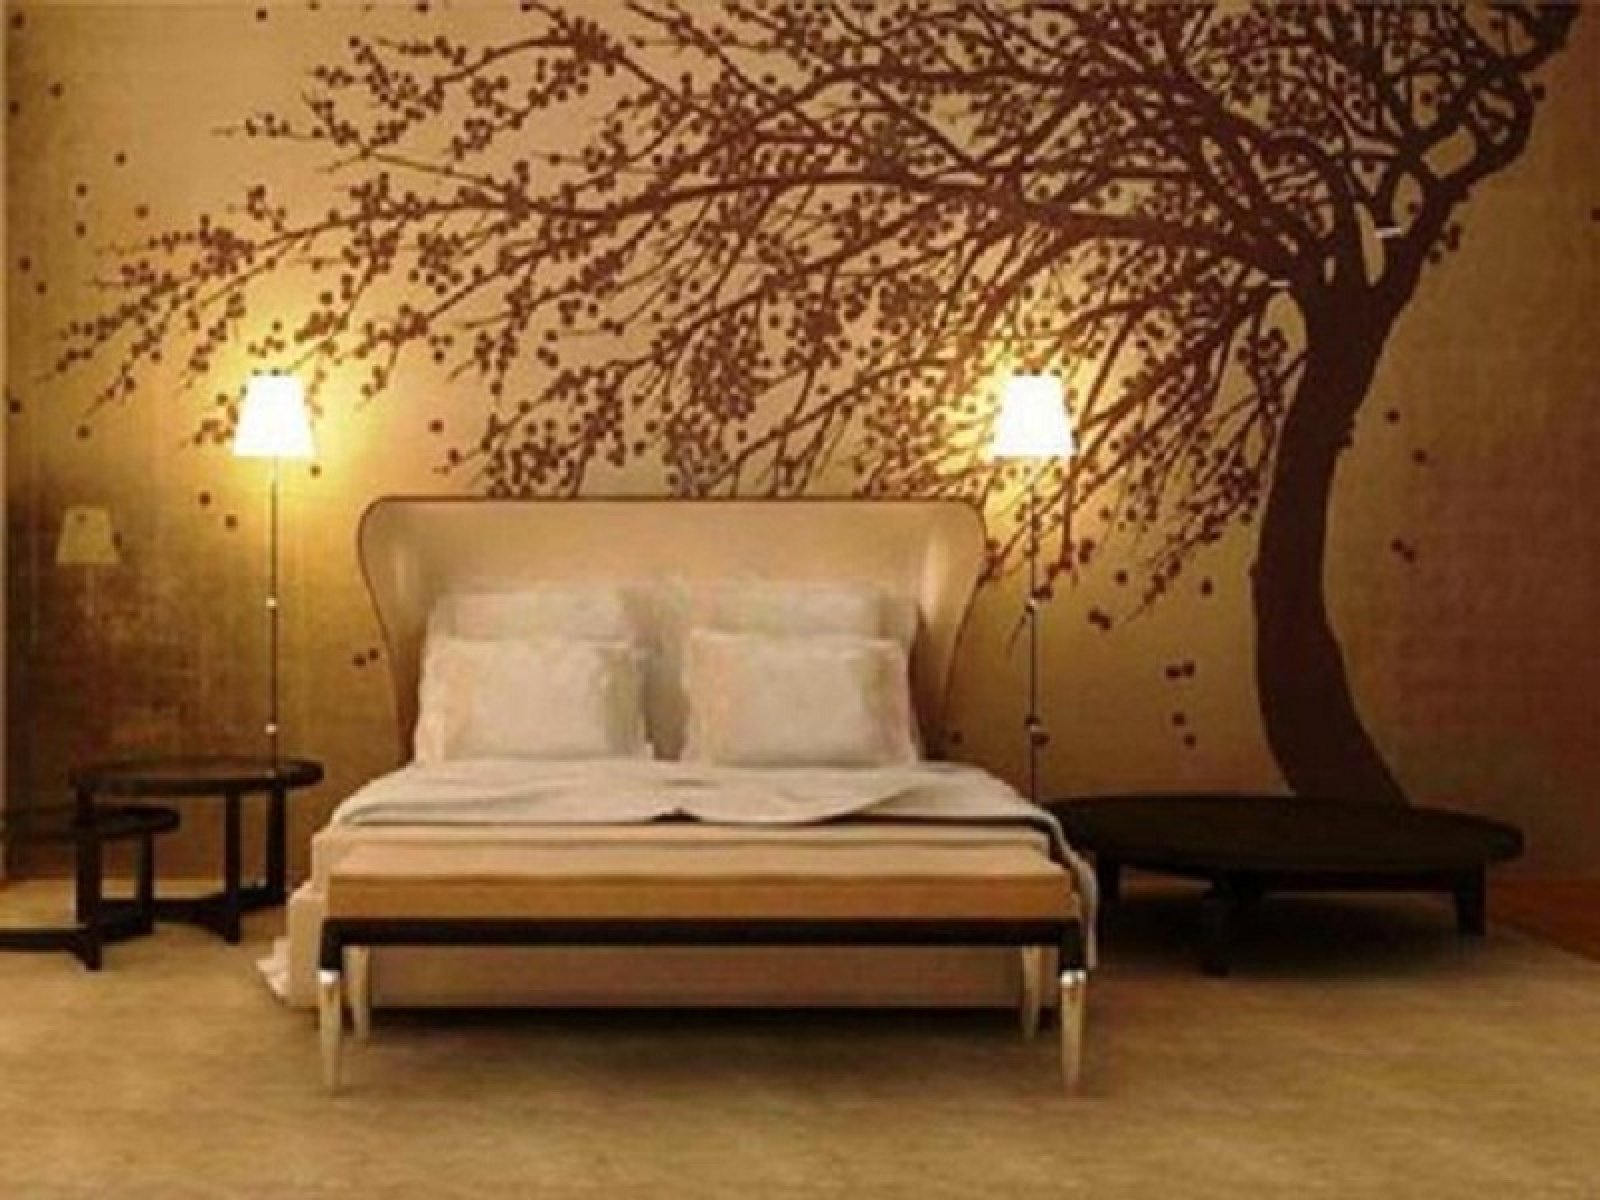 Best Diy Wallpaper Designs For Bedrooms Uk